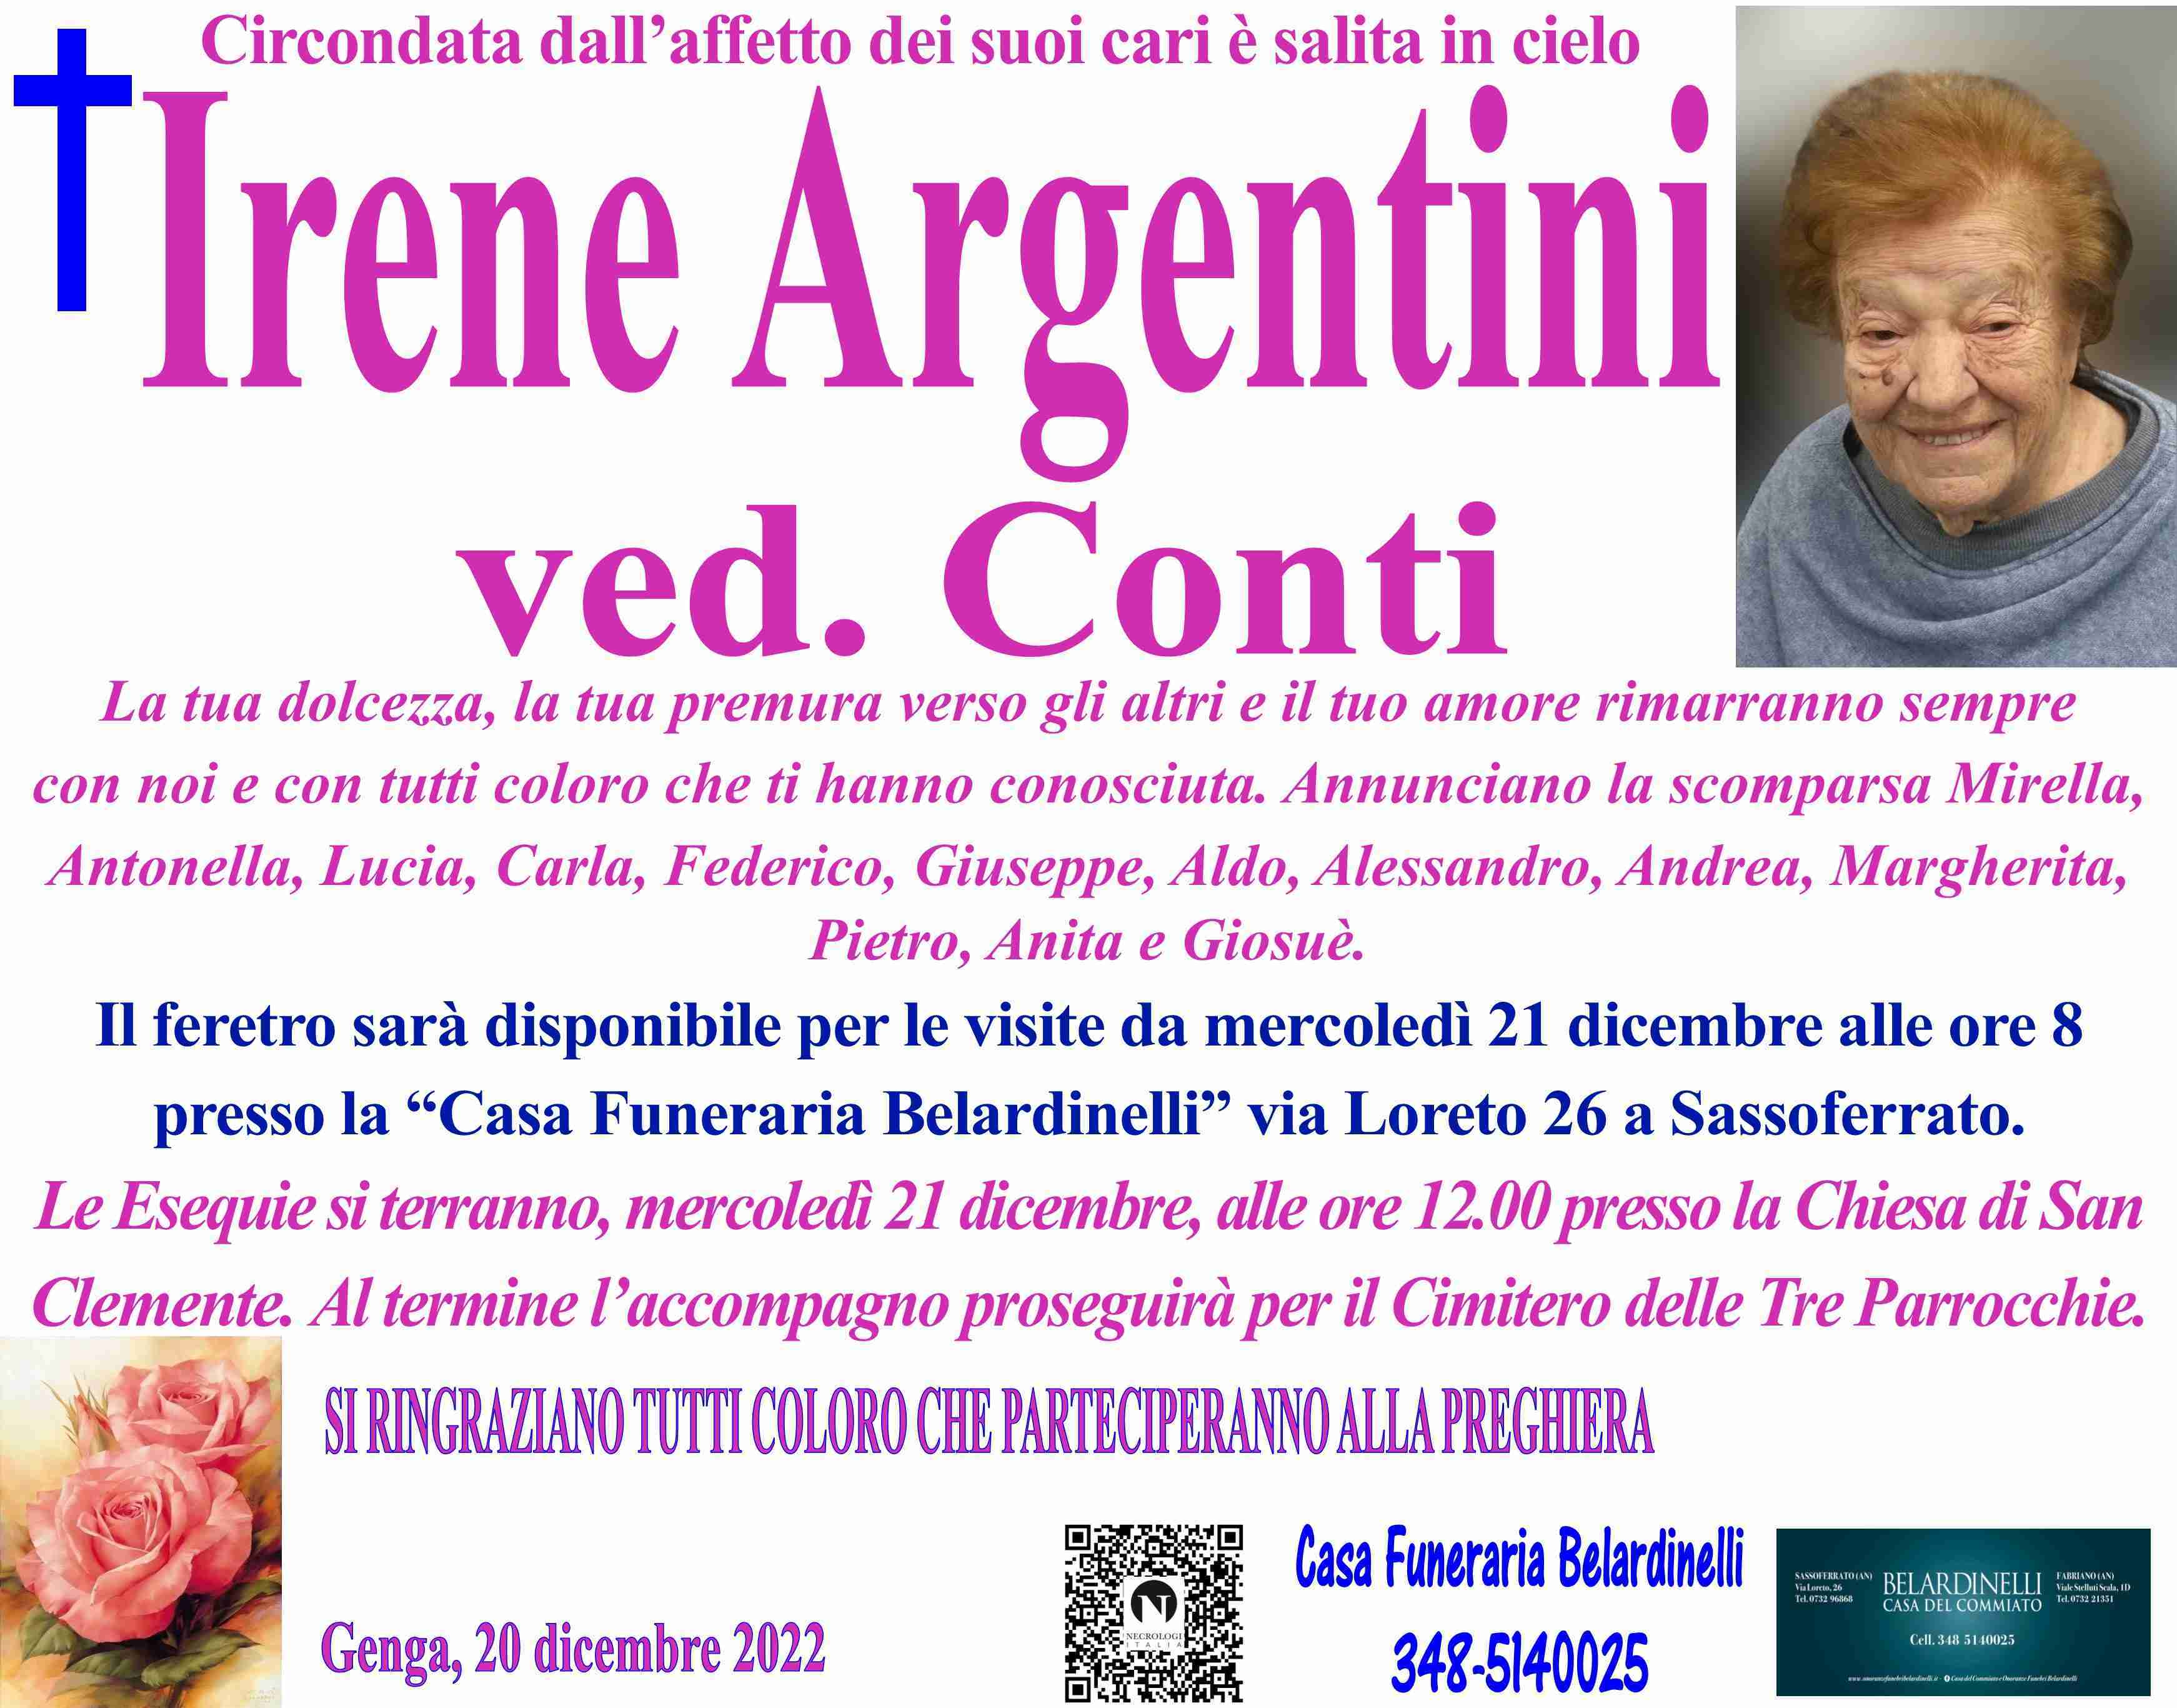 Irene Argentini